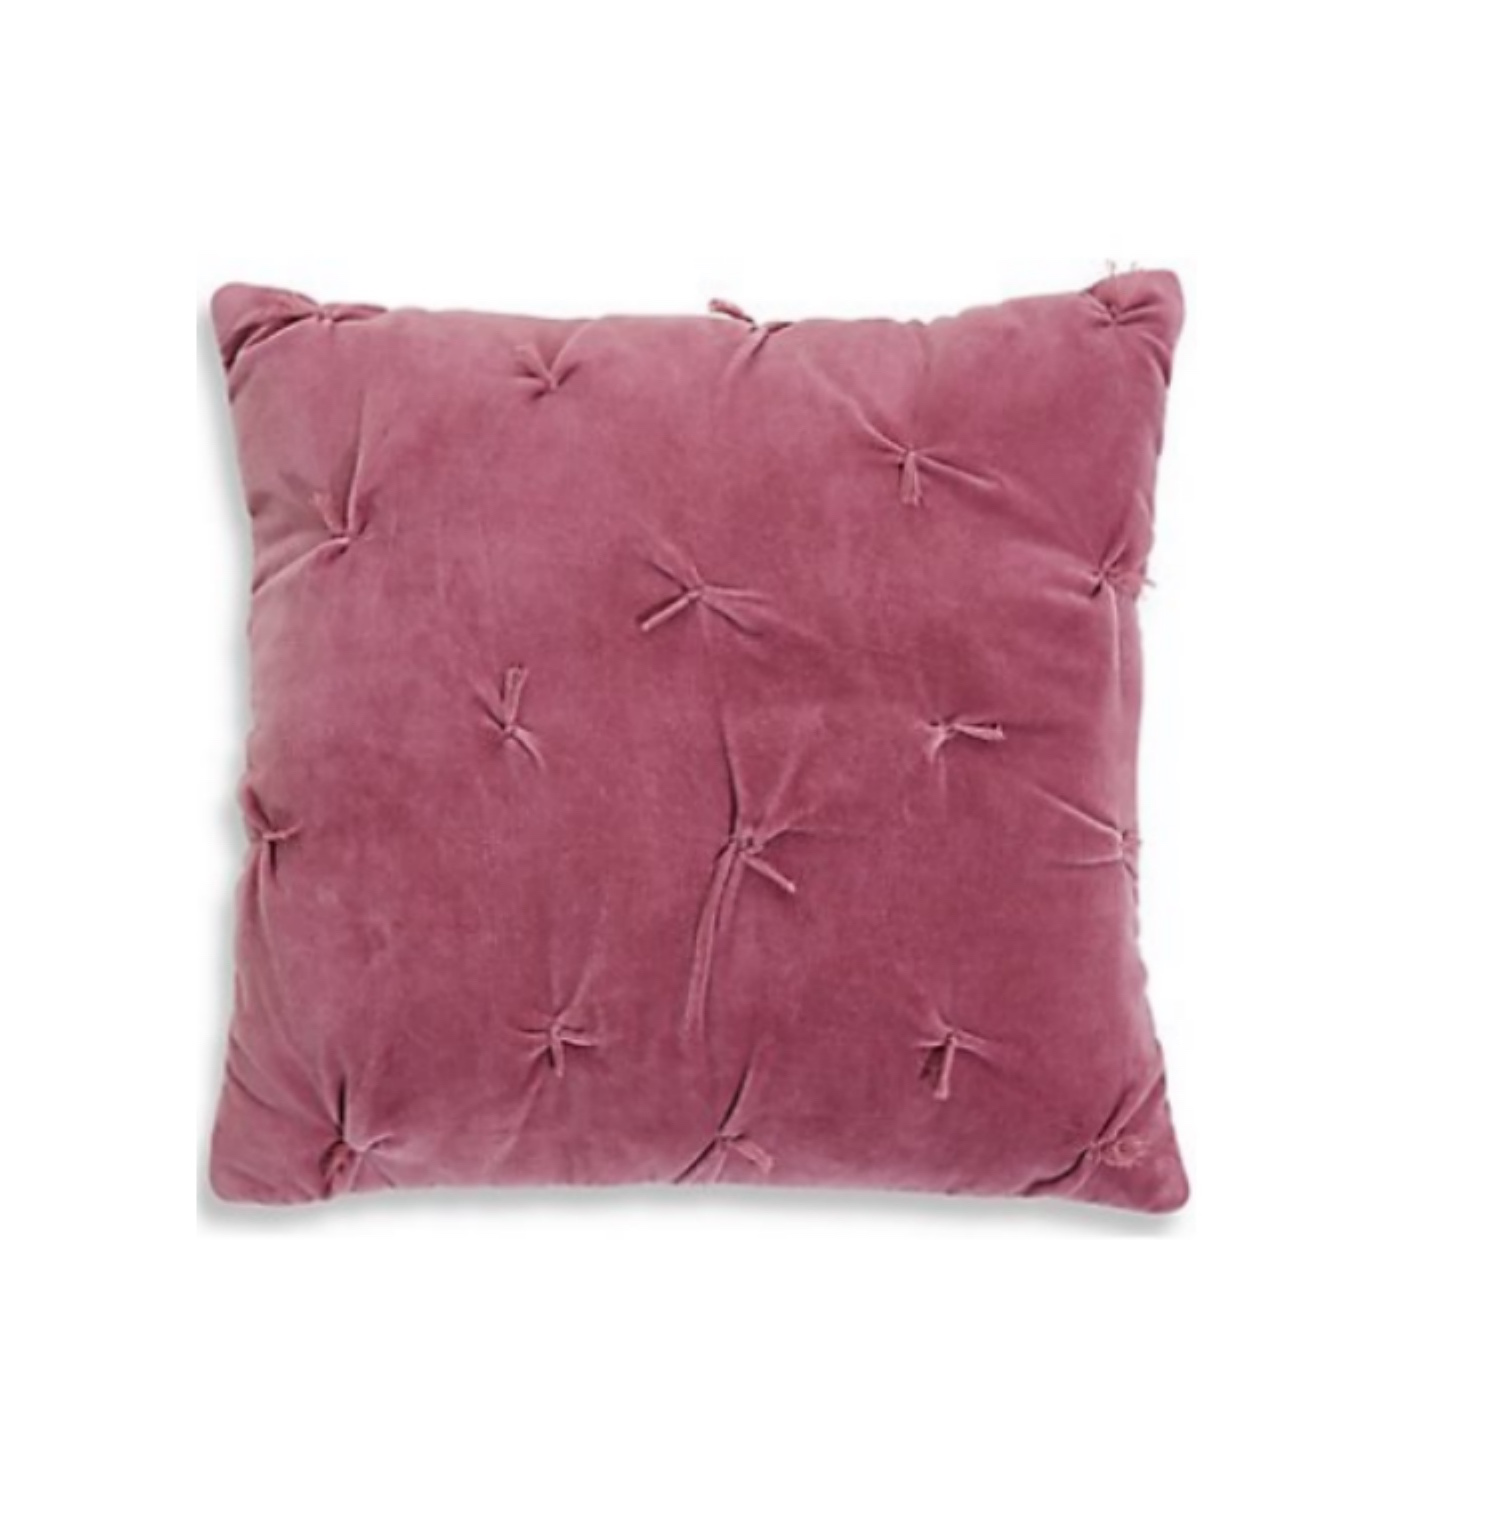 M&amp;S Cotton Velvet Cushion: £25.00